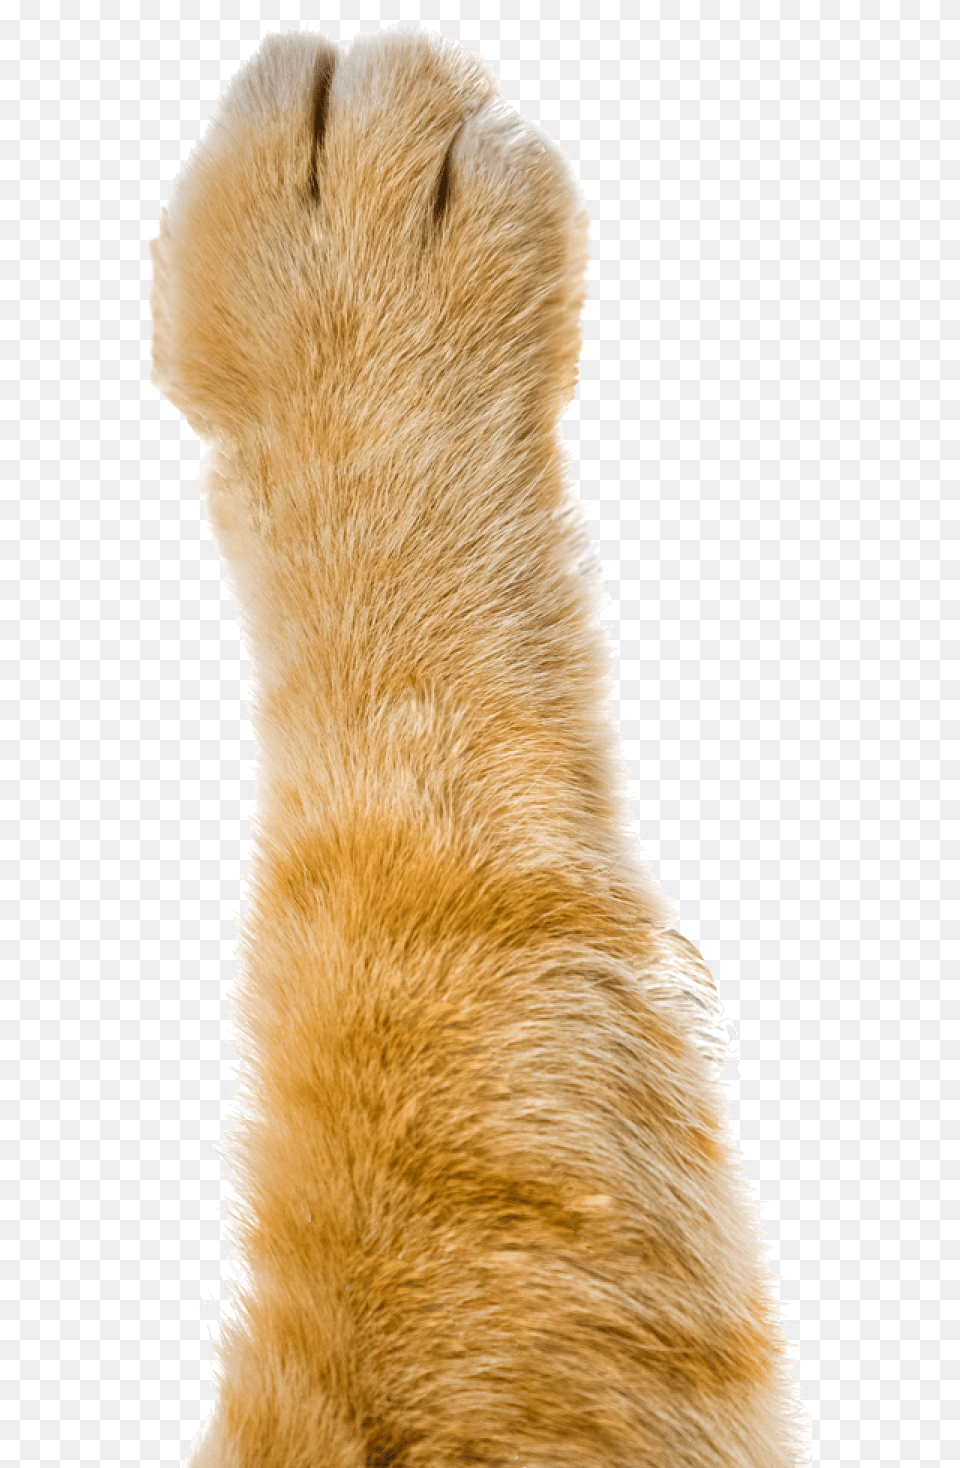 Pointless Paws Orange Tabby Cat Paw, Animal, Bear, Mammal, Wildlife Png Image